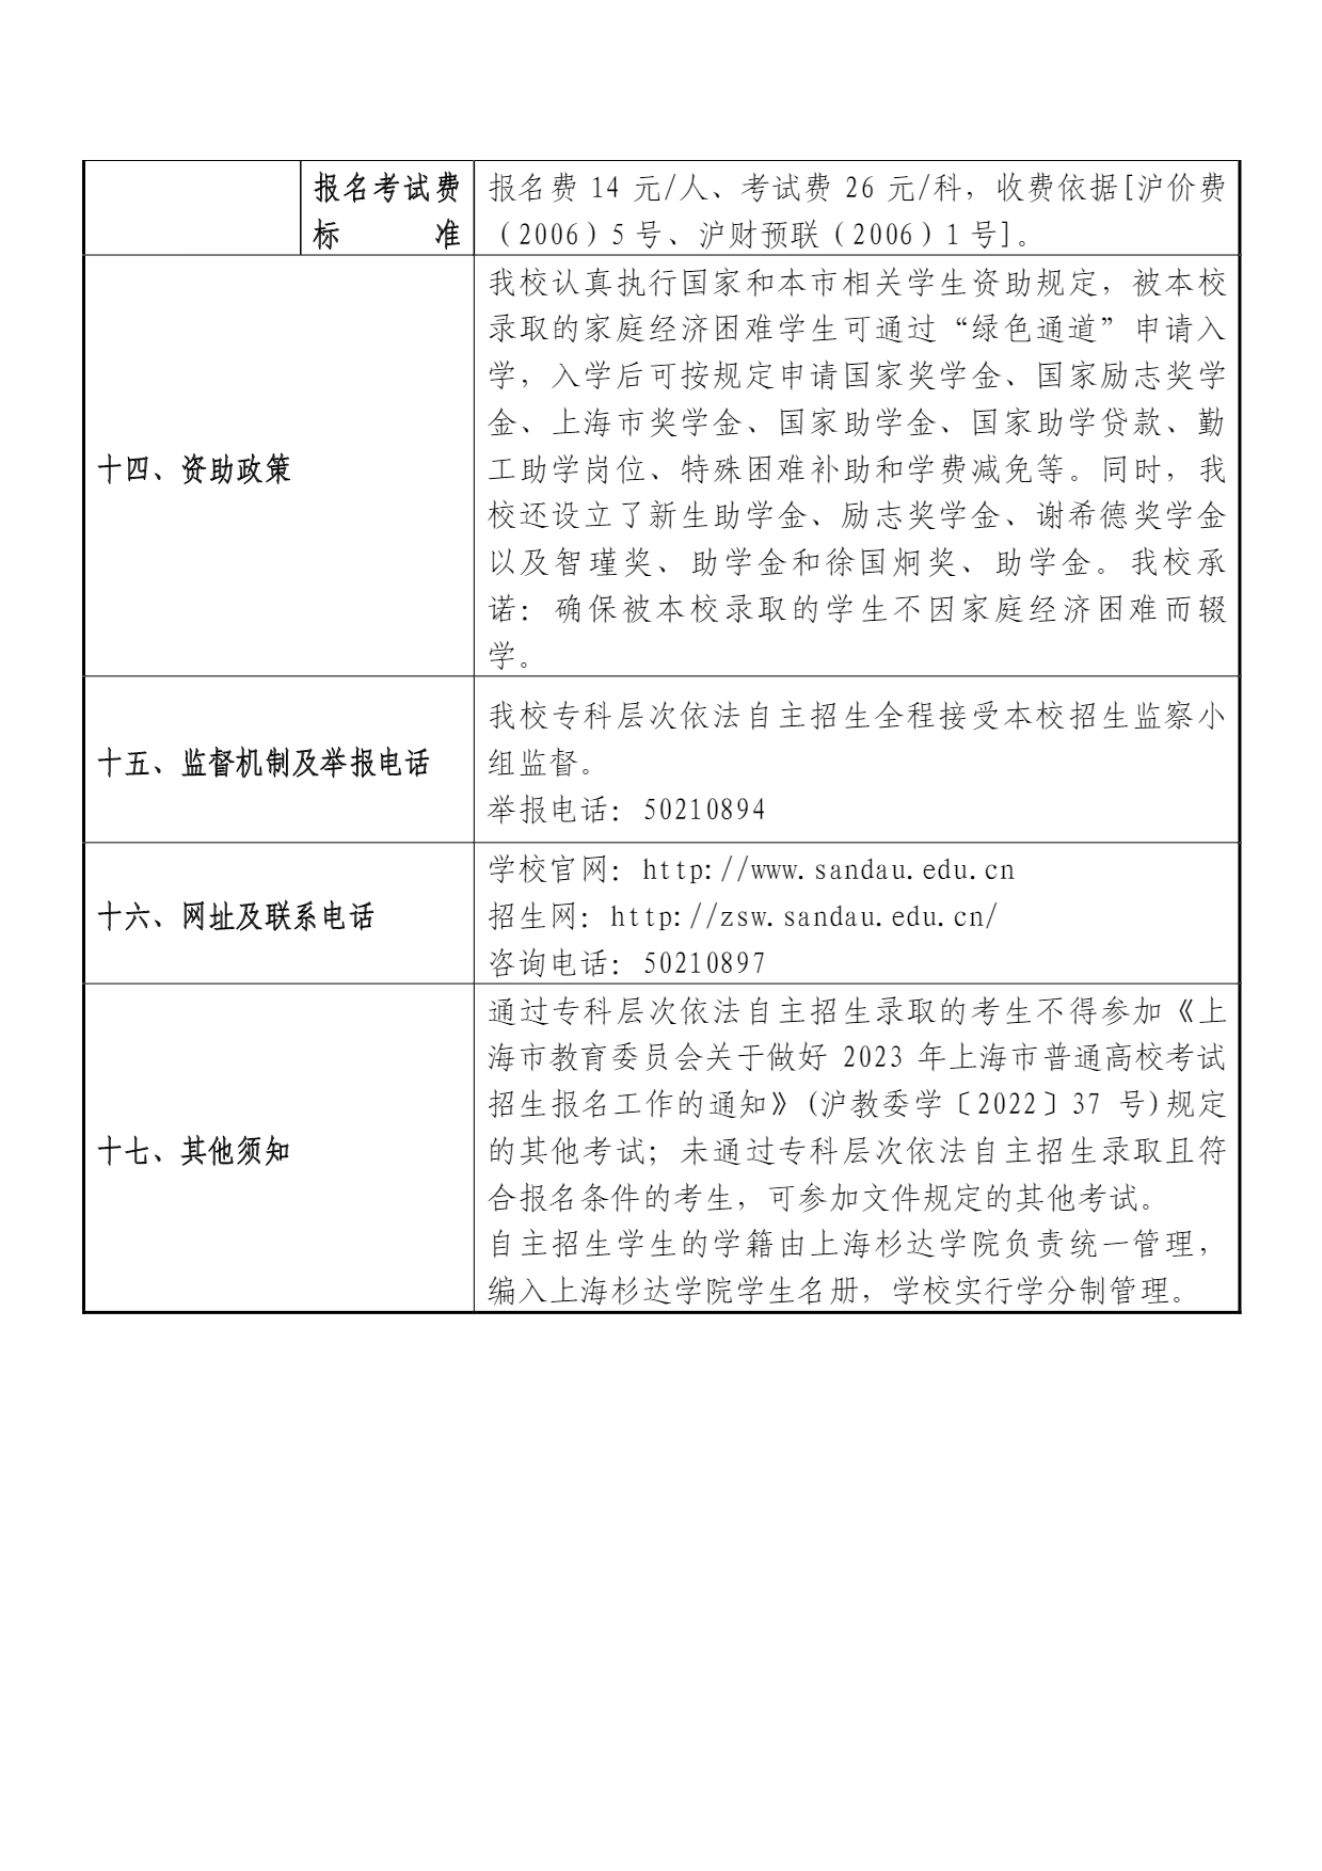 上海杉达学院－2023年专科层次依法自主招生章程